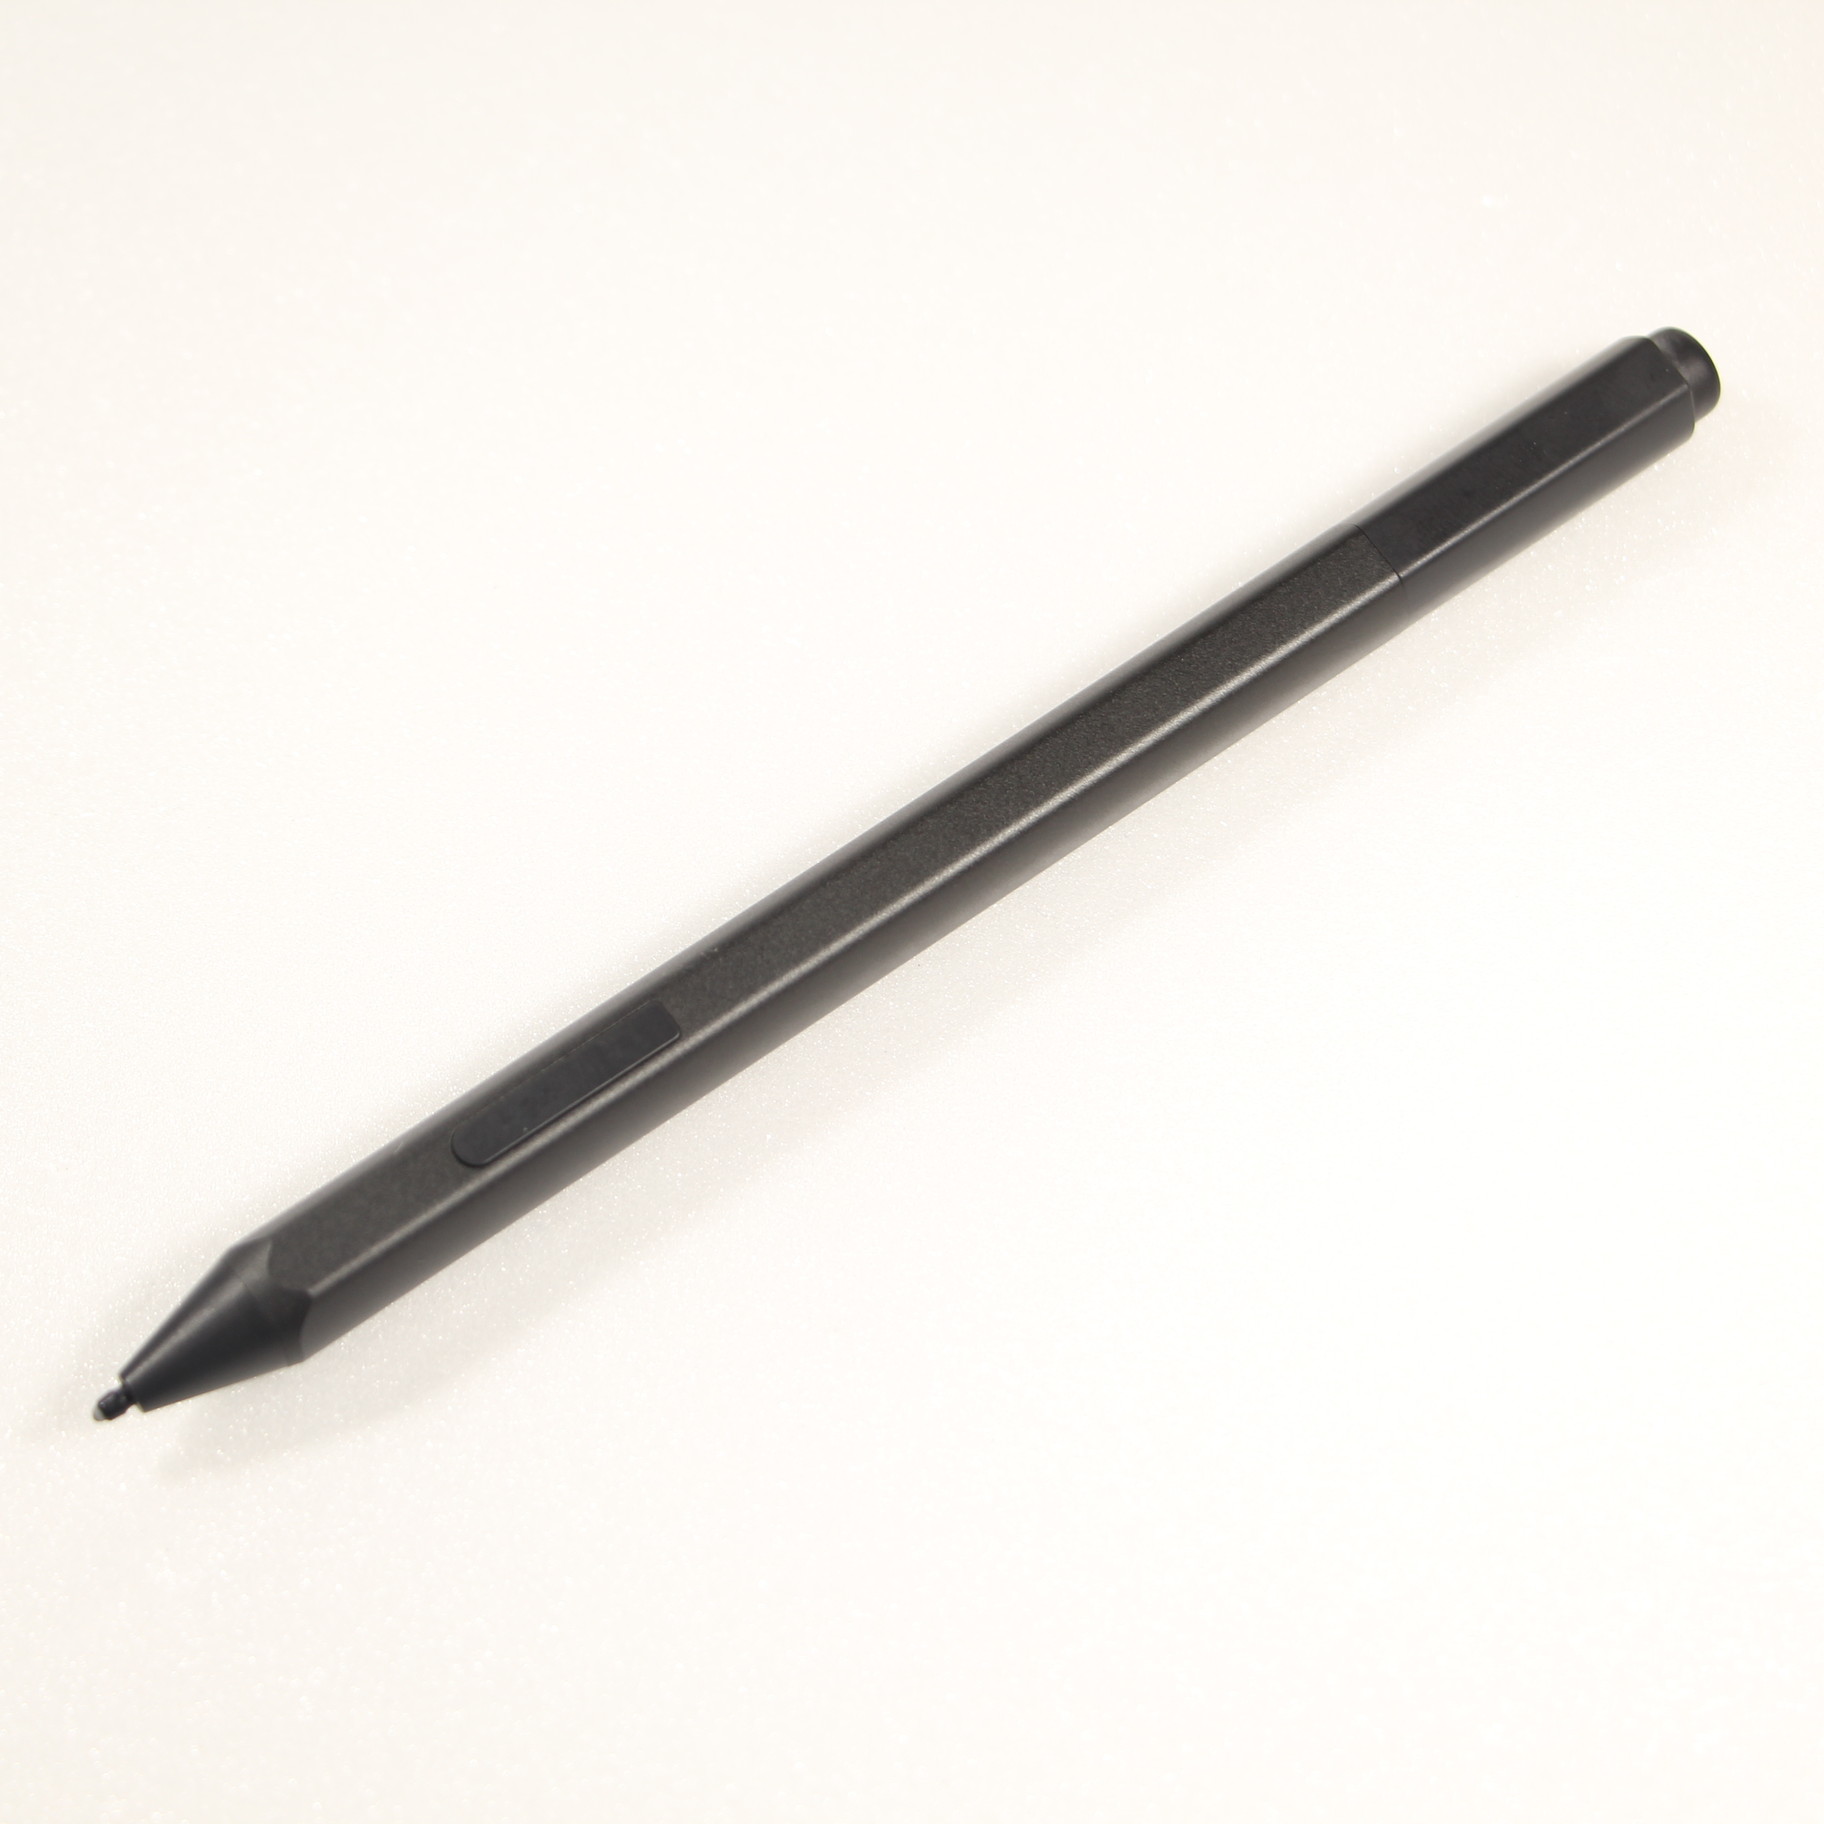 【純正】 Surface ペン ブラック EYU-00007 マイクロソフト